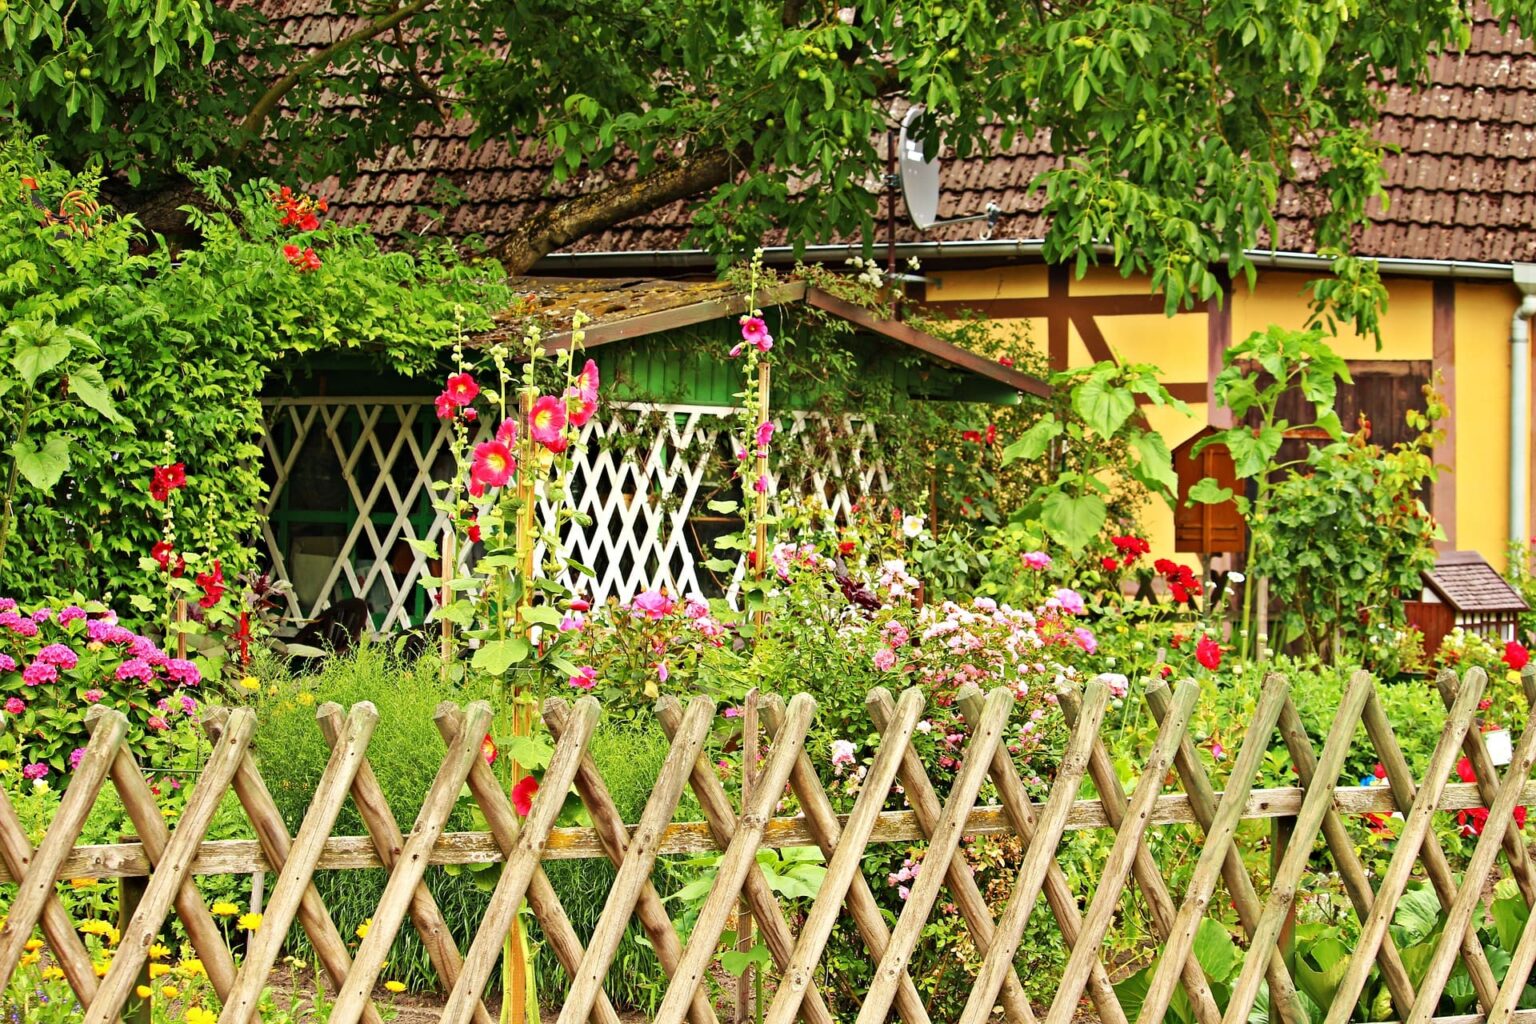 Recinzioni giardino: 28 ottime idee per ispirarti - Recinzioni GiarDino 11 1536x1024